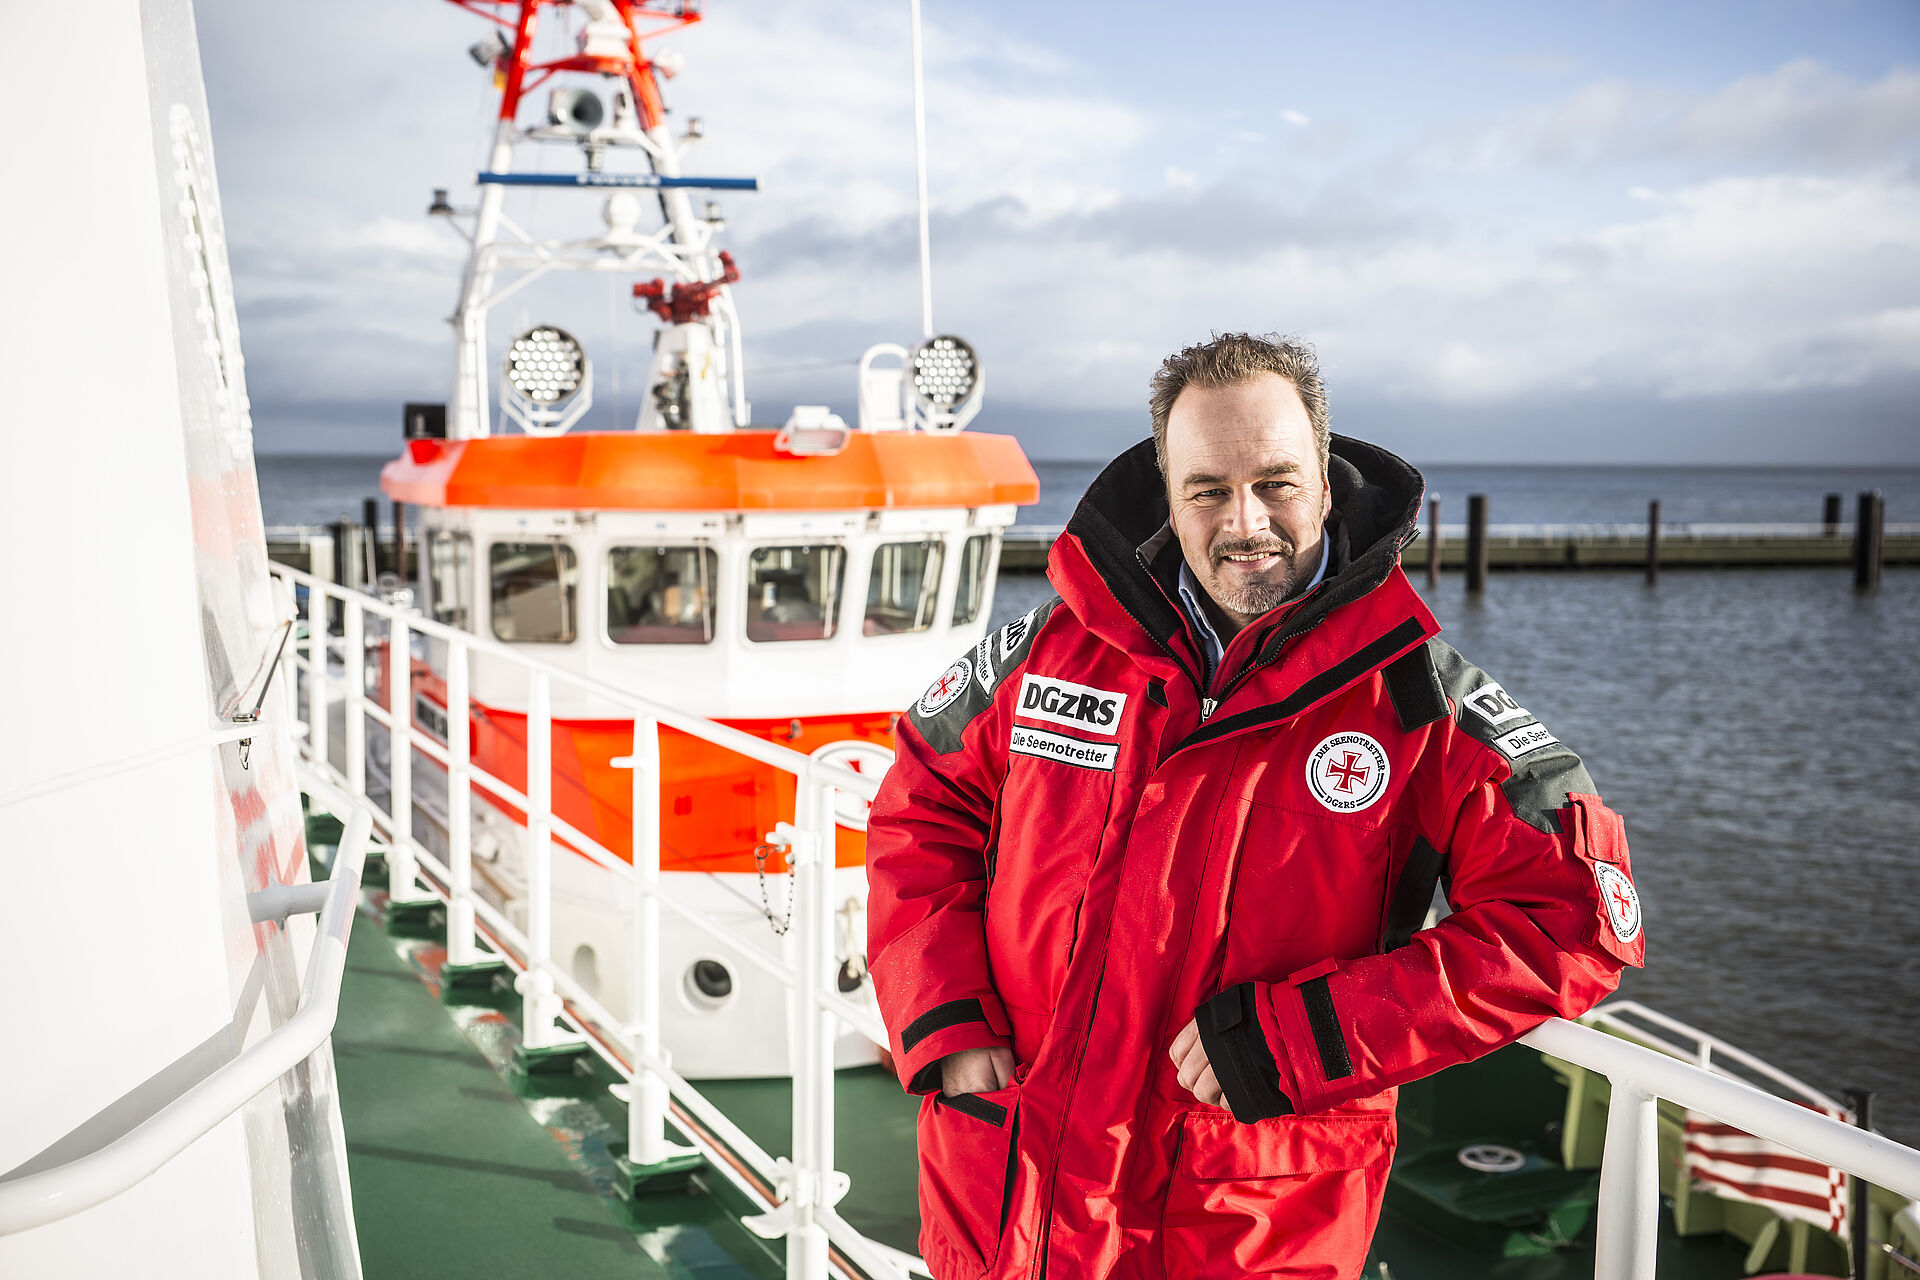 Der Schauspieler und Seenotretter-Botschafter Till Demtrøder lehnt in einer roten Wetterjacke der DGzRS auf einer Rehling. Im Hintergrund ist der Aufbau eines Seenotrettungskreuzers zu erkennen.